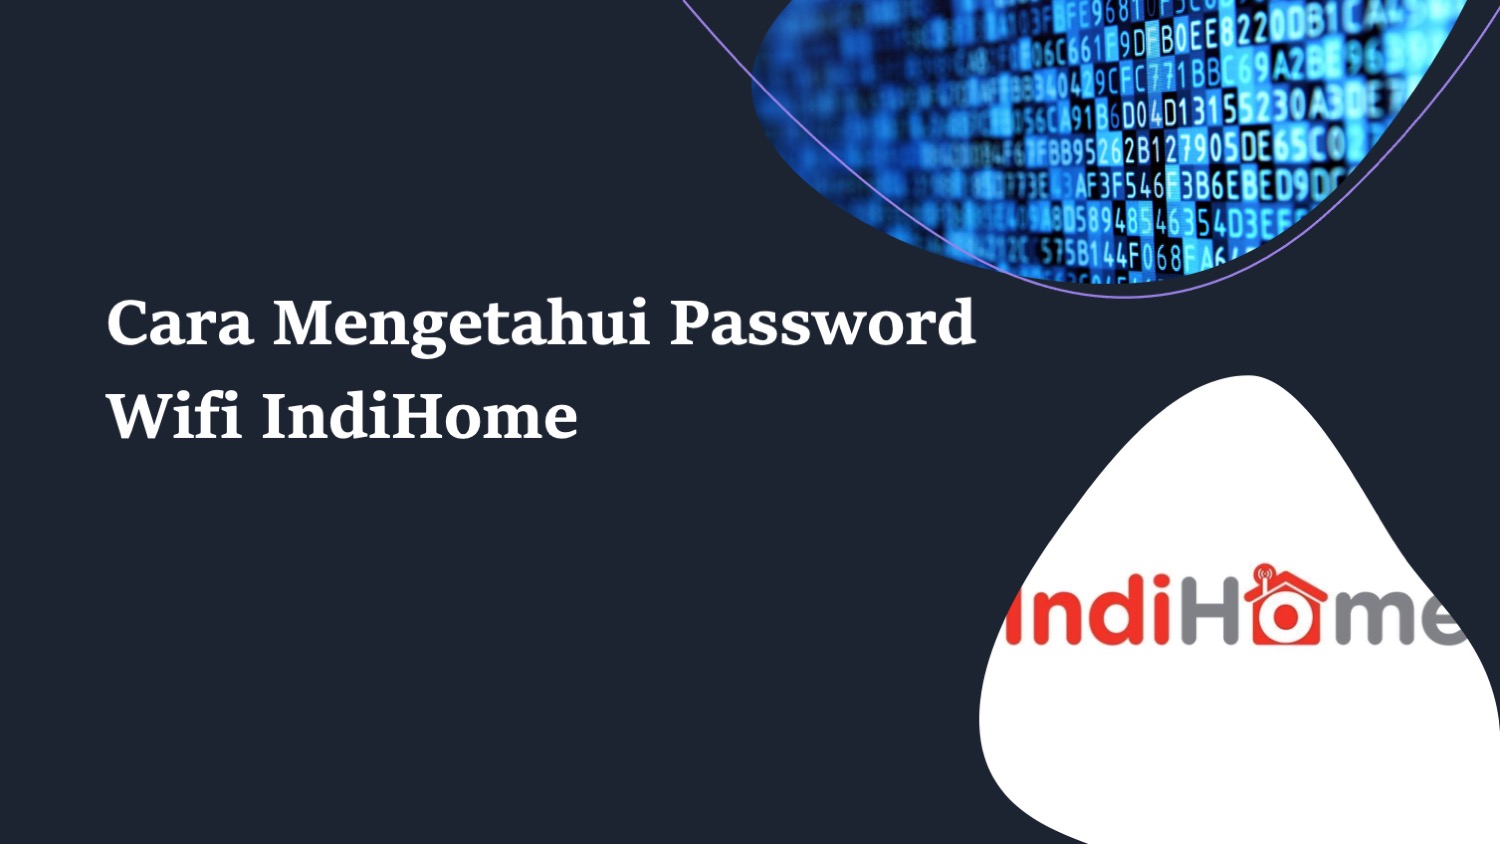 Cara Melihat Password Wifi Indihome Di Hp. Cara Mengetahui Password Wifi Indihome, Dijamin Berhasil